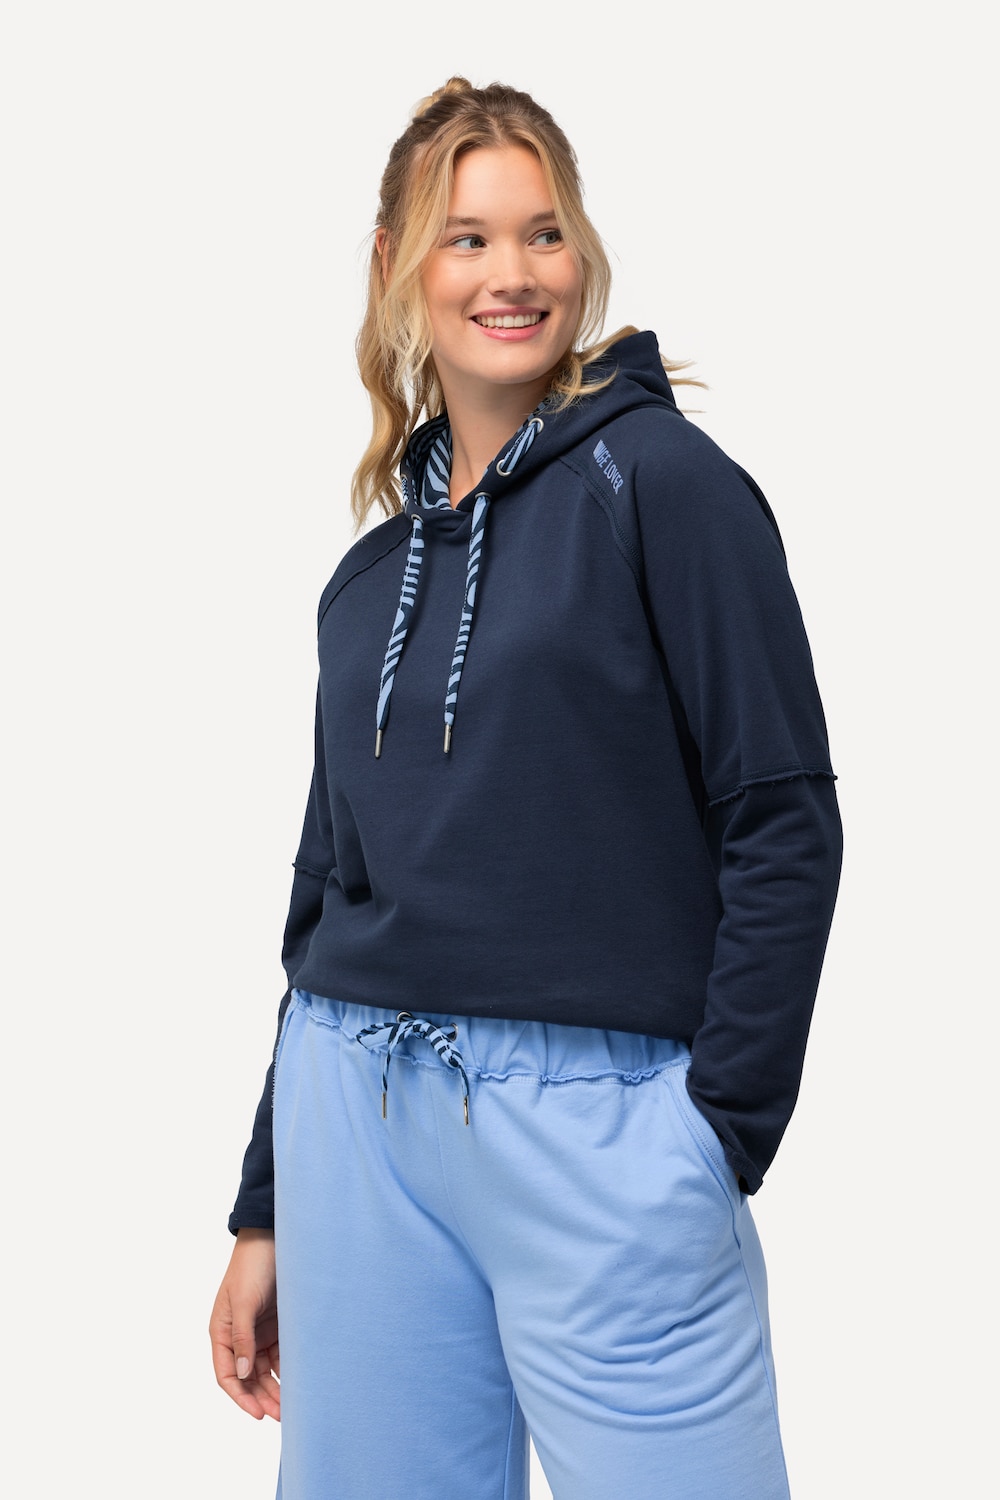 Grote Maten Loungewear-hoodie, Dames, blauw, Maat: 50/52, Katoen/Polyester, Ulla Popken